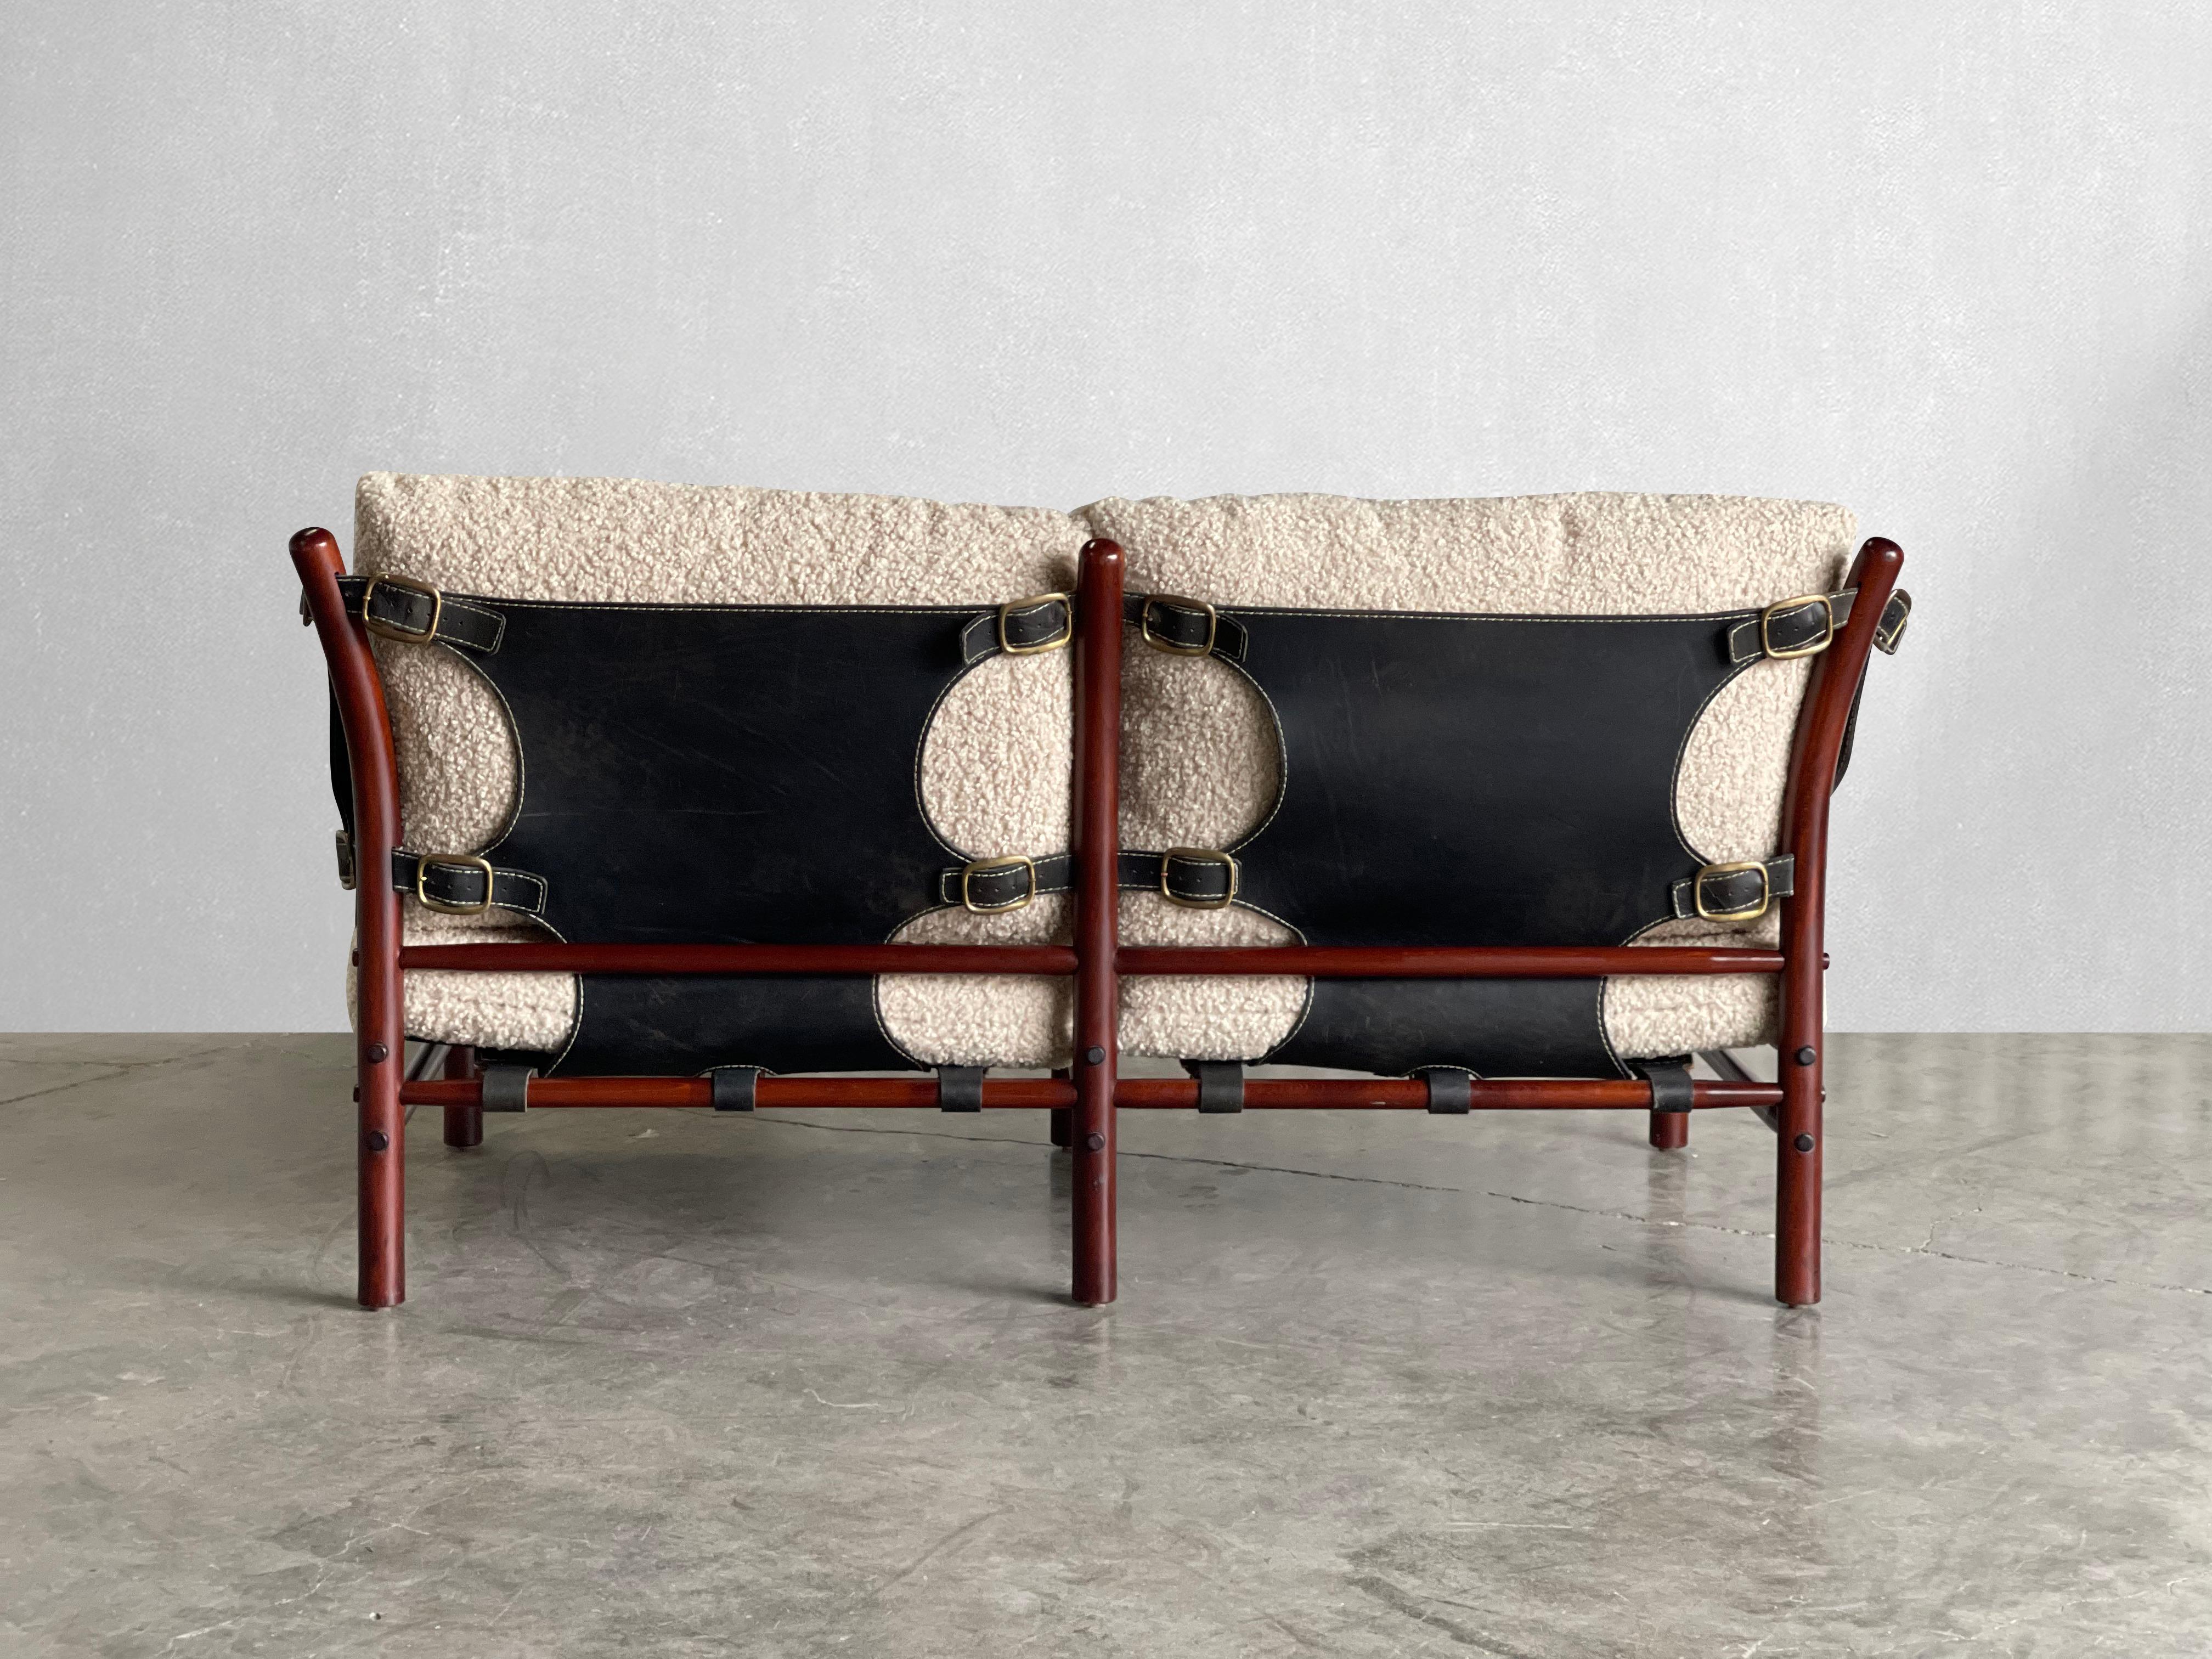 C. 1960s

Produziert von Arne Norell AB in Schweden. Dieses Sofa ist der Inbegriff von Komfort. Es wurde mit hochwertigstem steinfarbenem veganem Sherpa neu gepolstert. Der Rahmen besteht aus gebeiztem Bugholz, Leder und Messing. 

Arne Norells